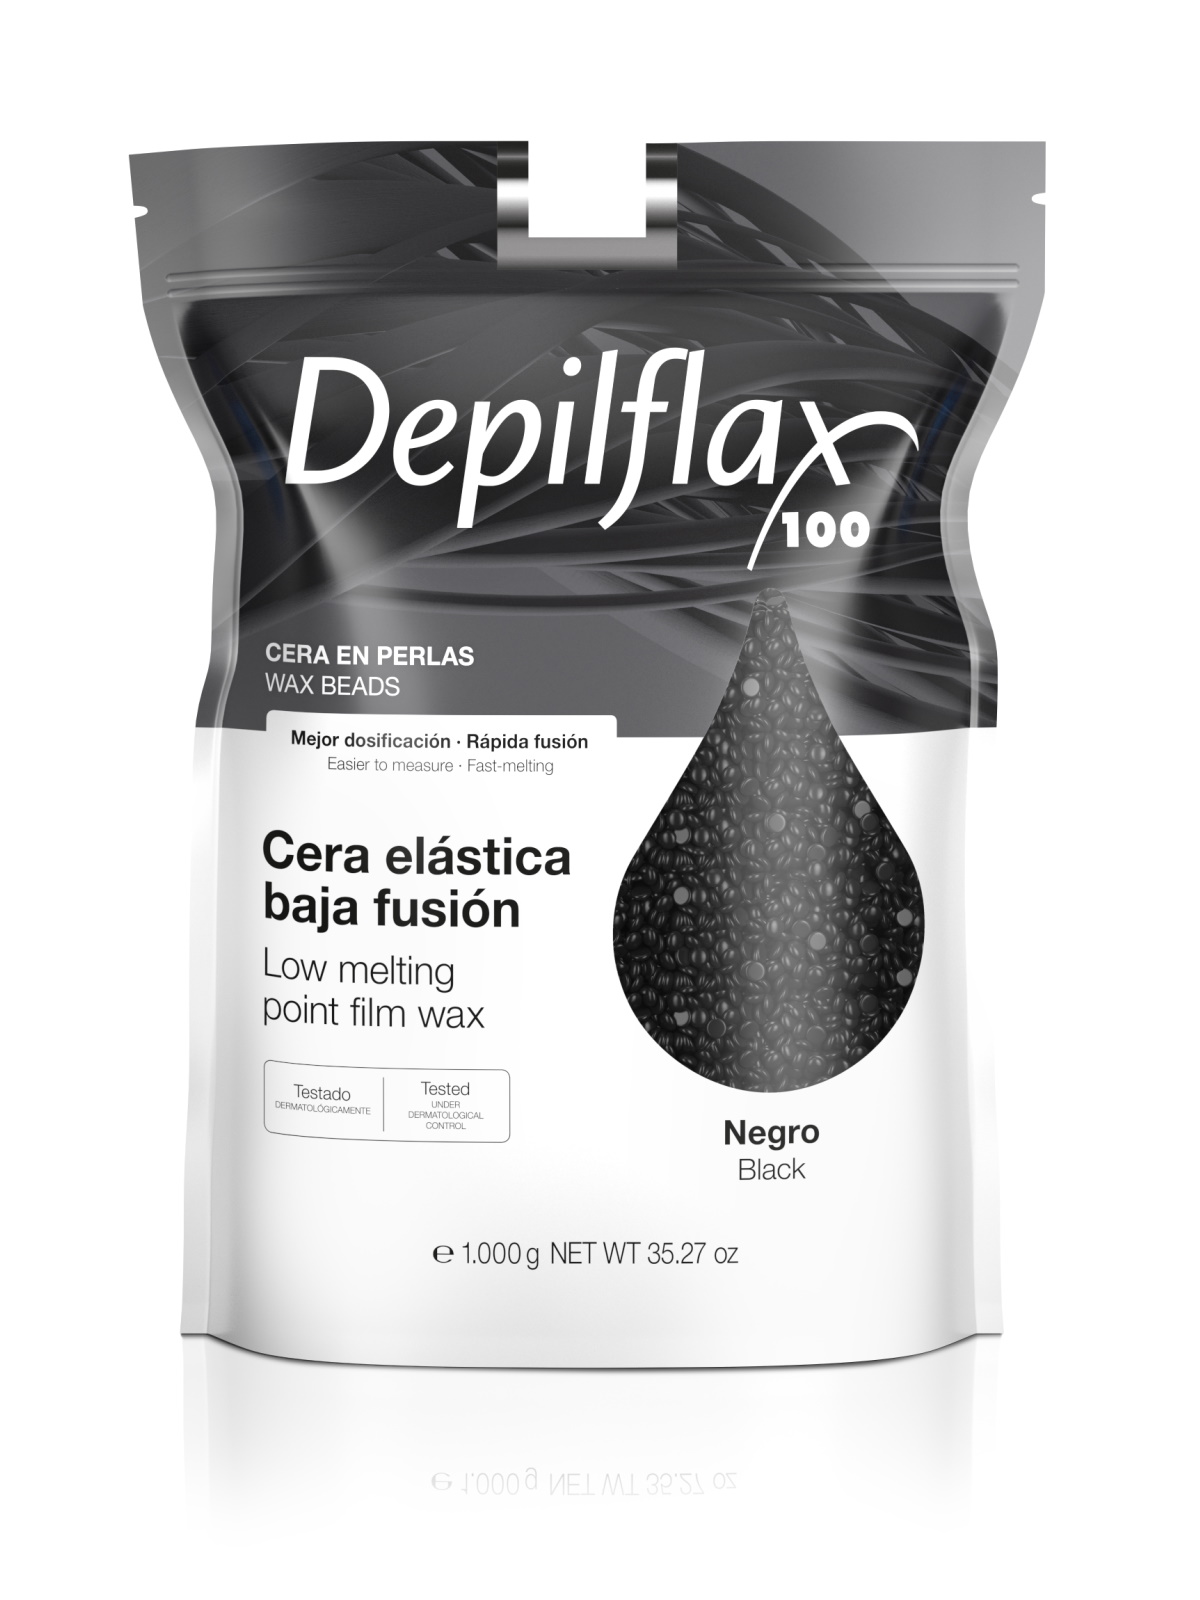 Воск для депиляции Depilflax Черный 1000 г воск для депиляции depilflax вино 1 кг